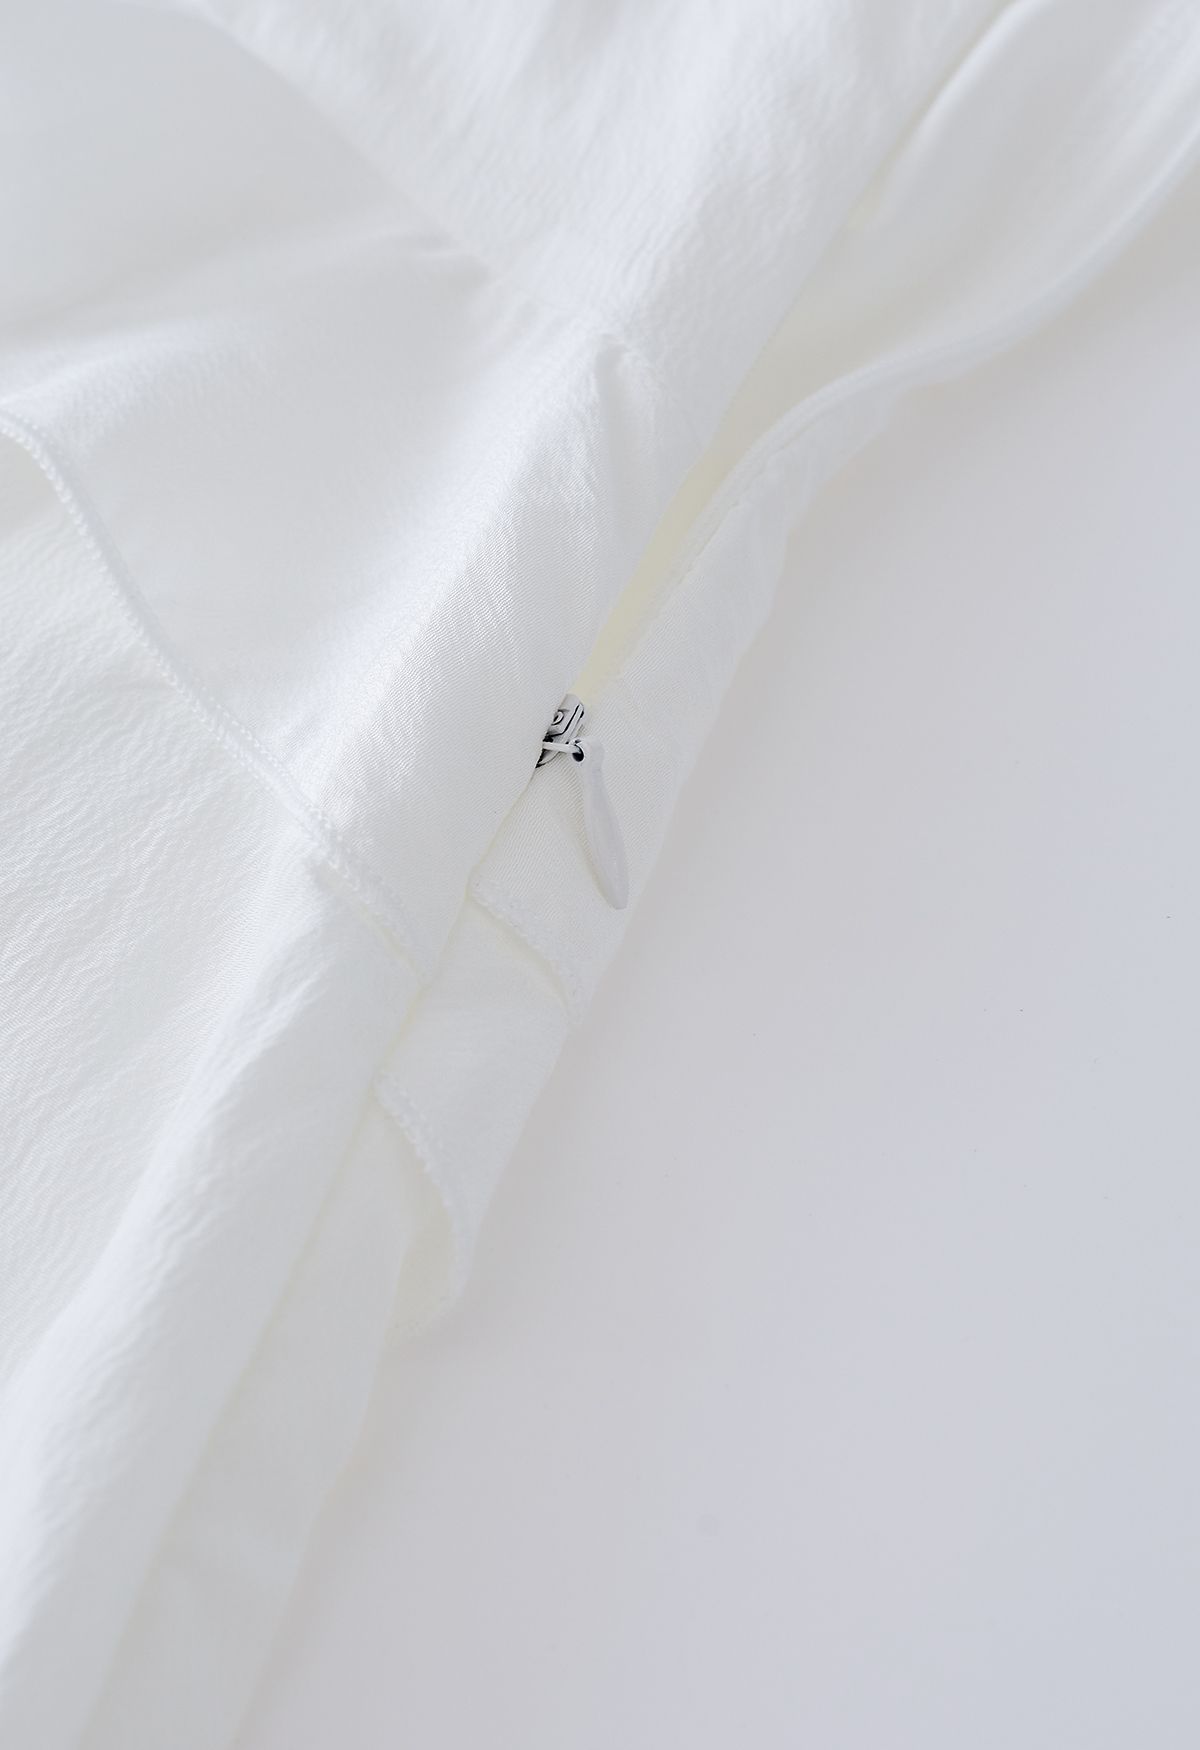 Robe camisole à volants et fente latérale en blanc